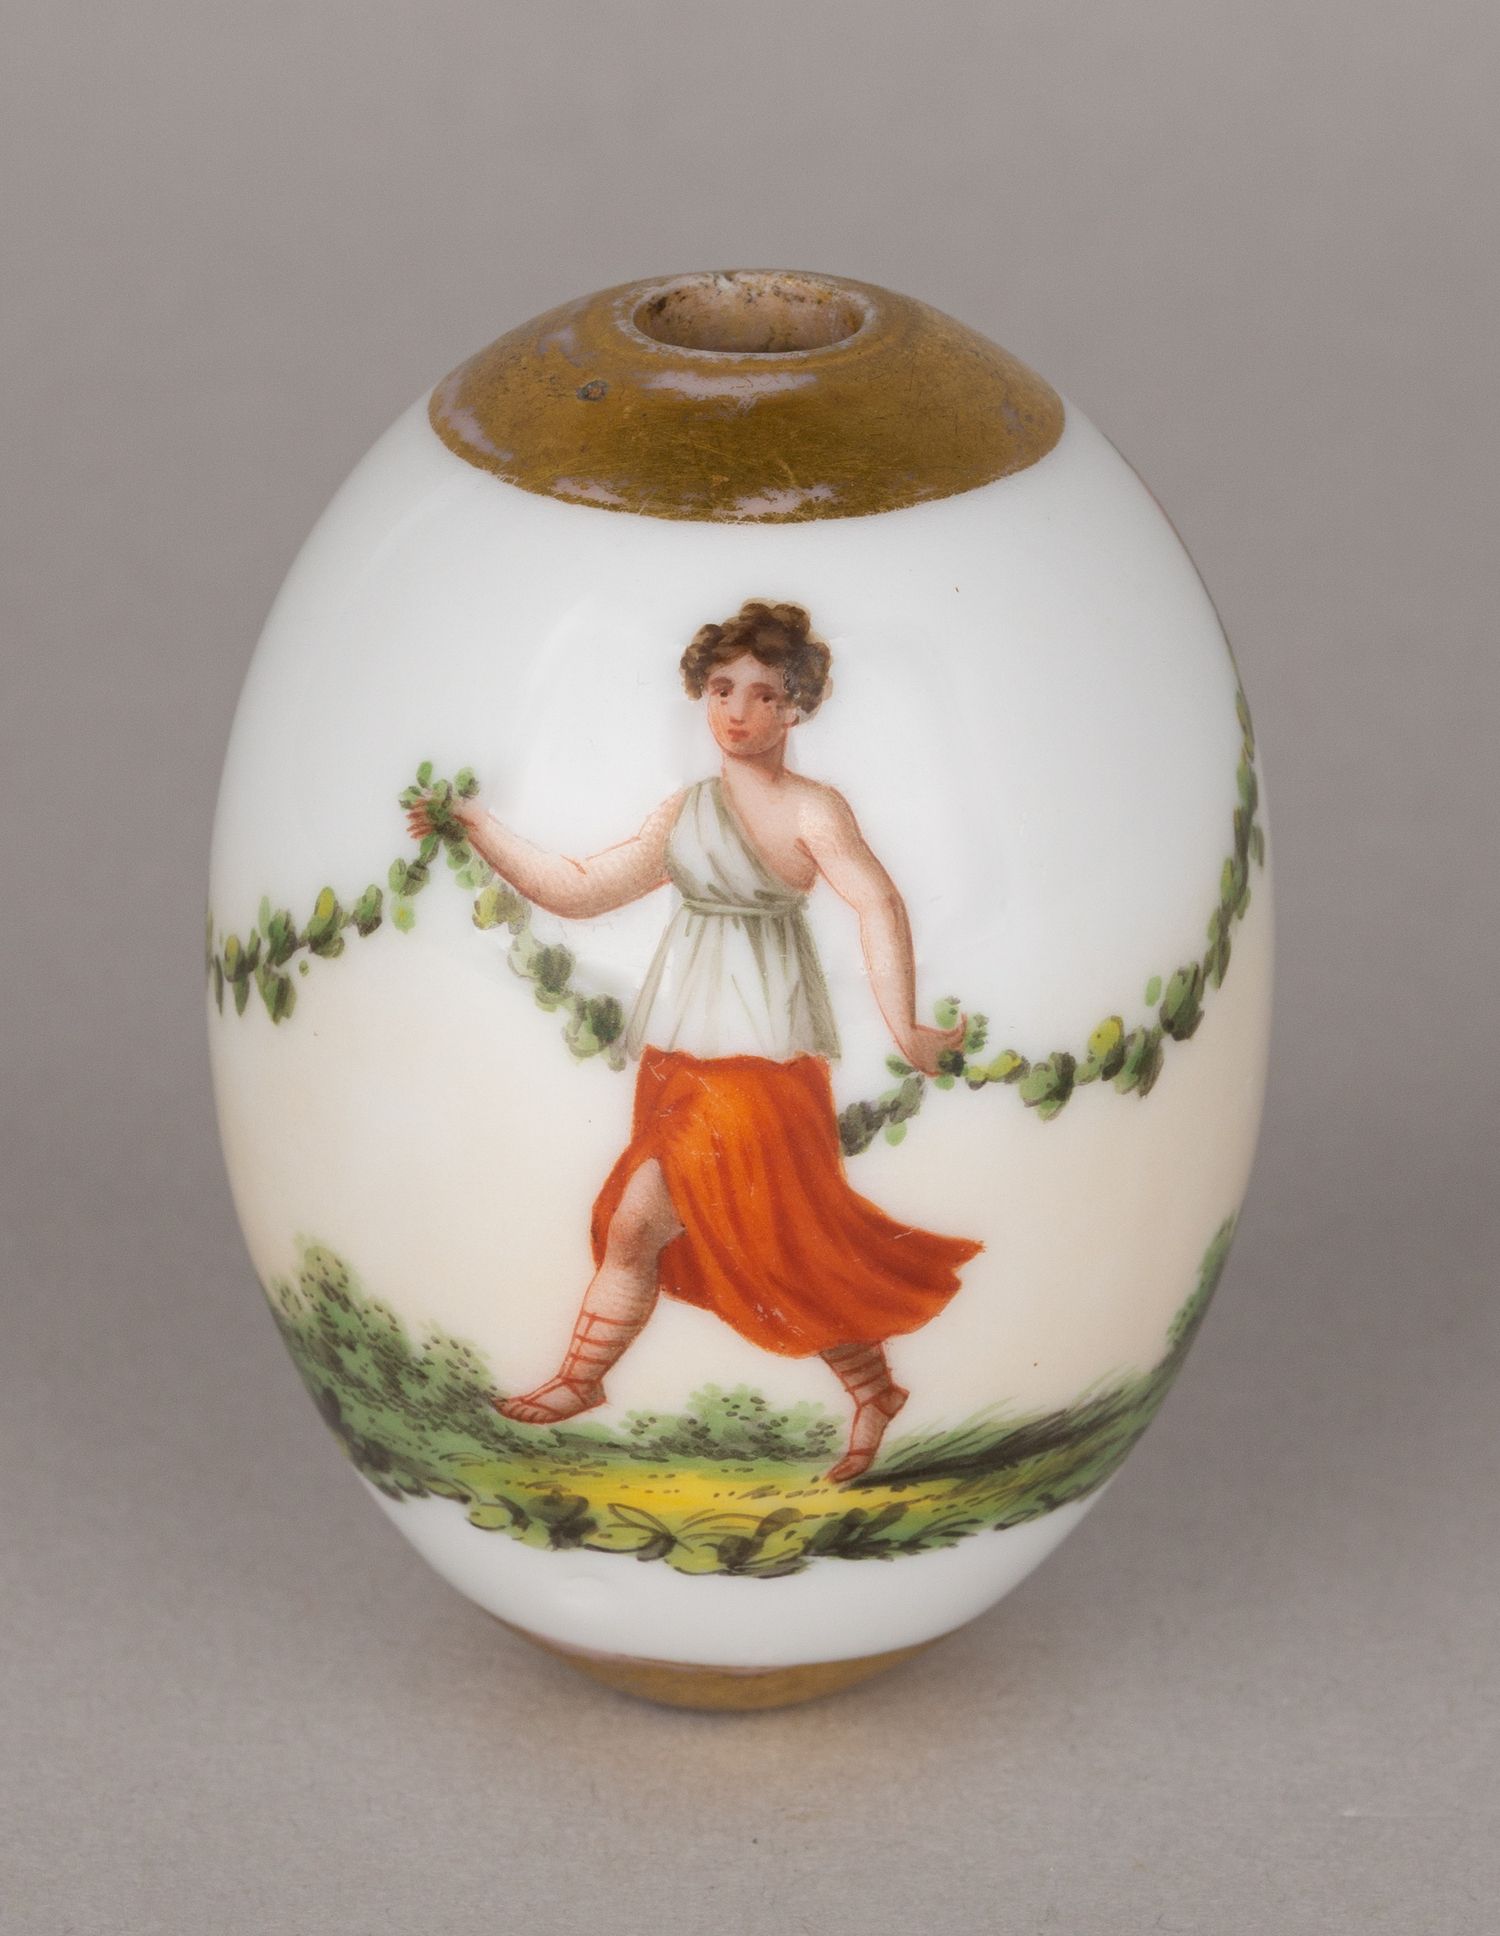 (Пасхальные дары) Яйцо пасхальное с античным декором. Россия, первая четверть XIX века.